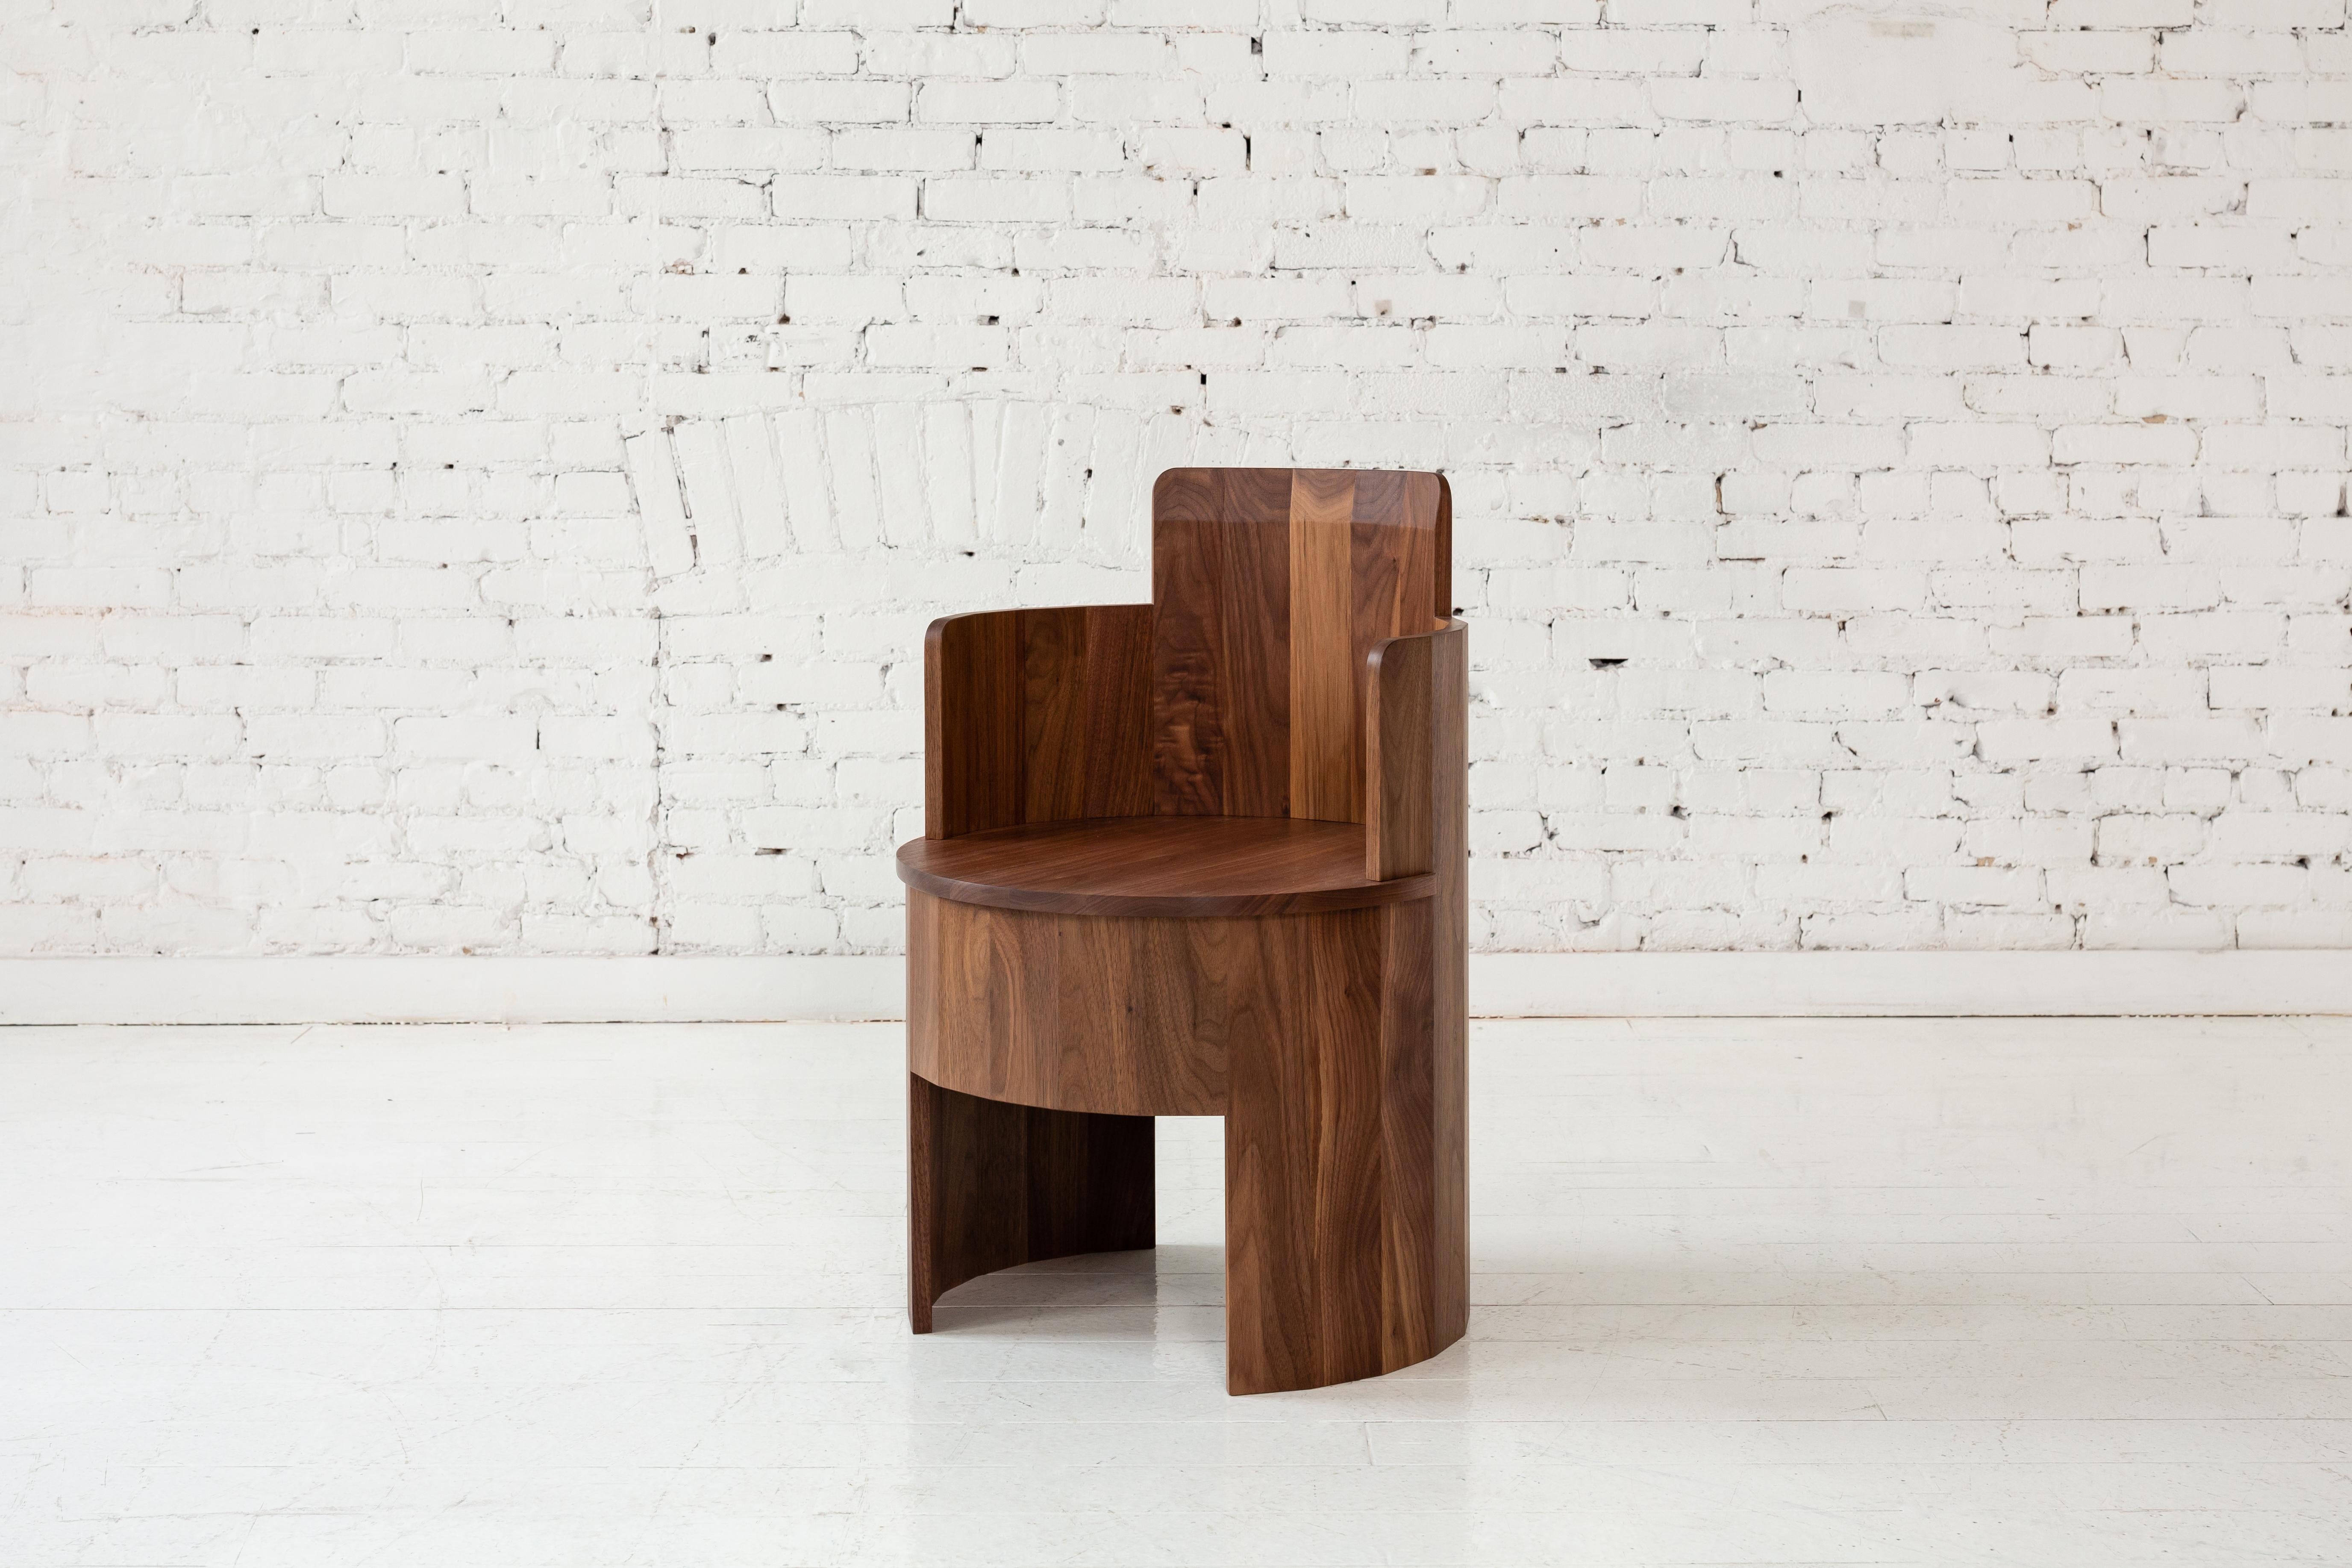 Dieser Beistellstuhl aus Holz ist Teil der neuen Cooperage Dining Collection. Jedes Stück weist große, facettierte, runde Elemente auf, die mit ihrem Namensgeber auf das traditionelle Küferhandwerk verweisen, das Fässer herstellt.

Der